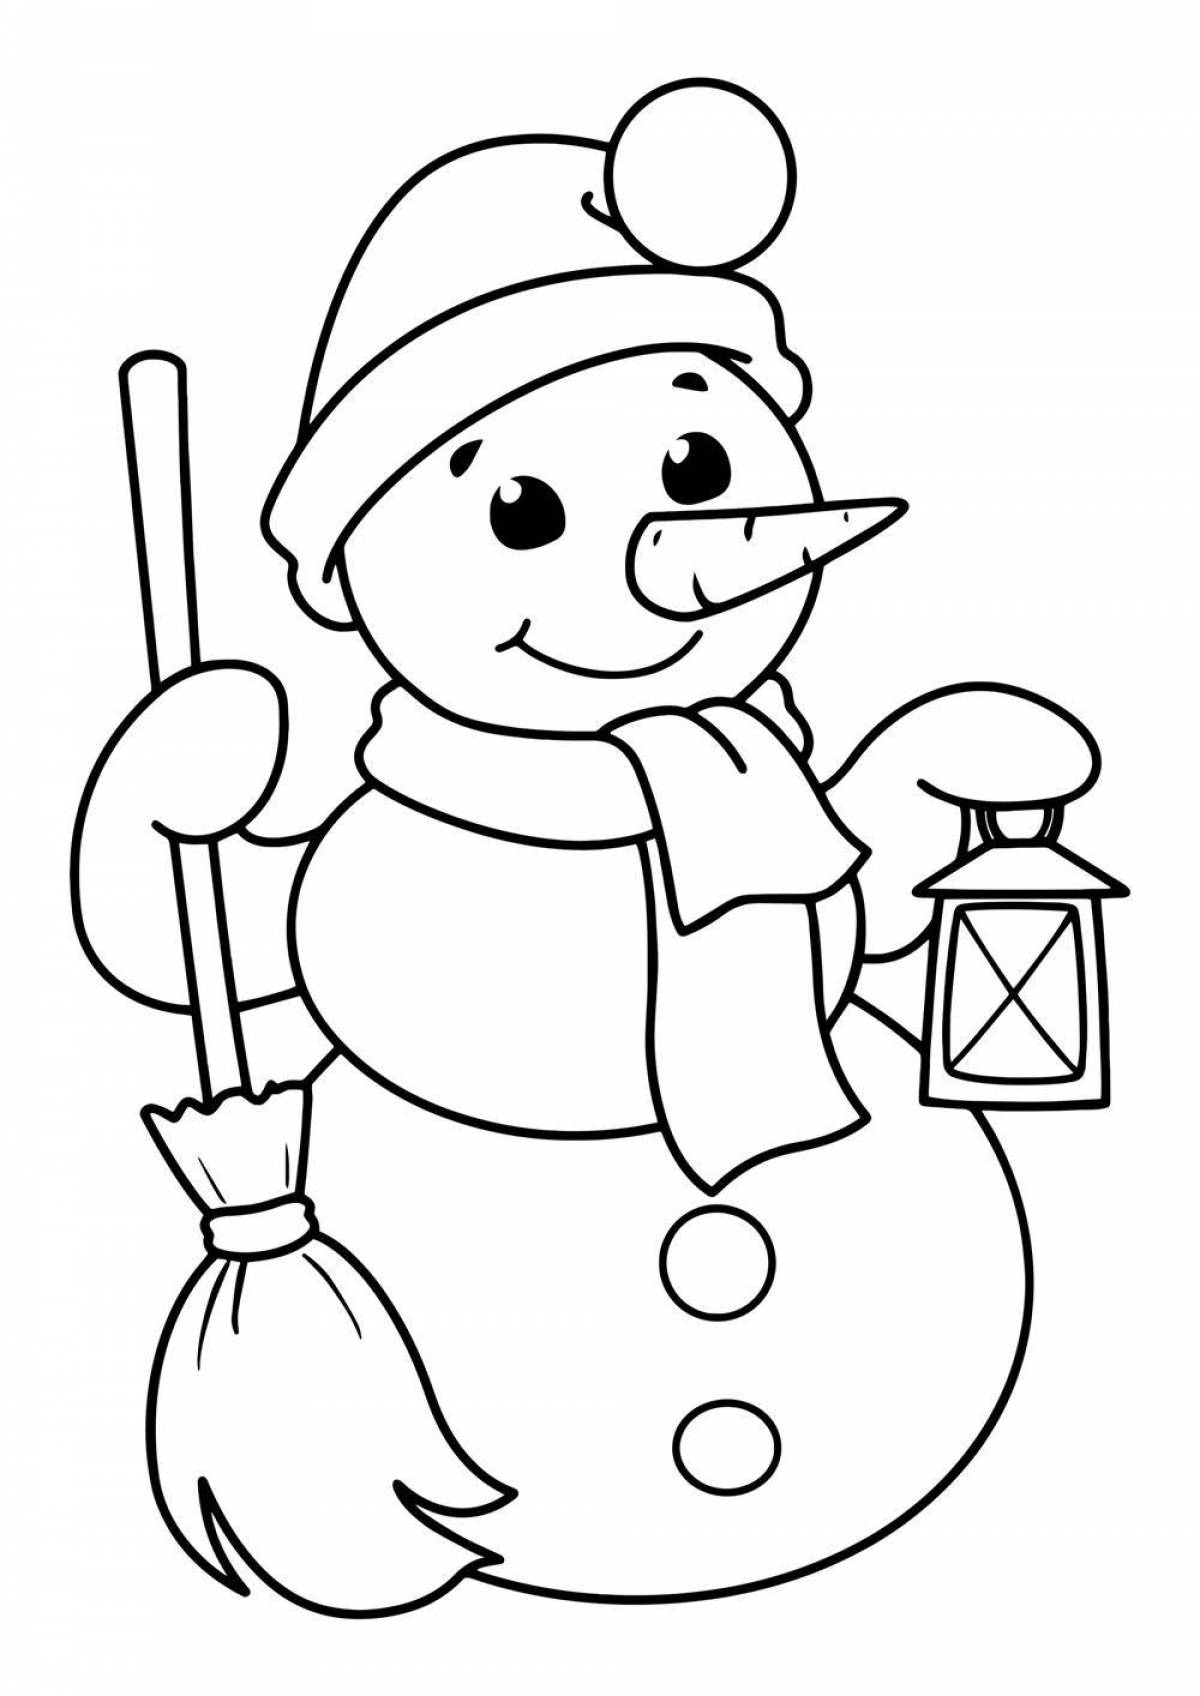 Красочная раскраска смешной снеговик для детей